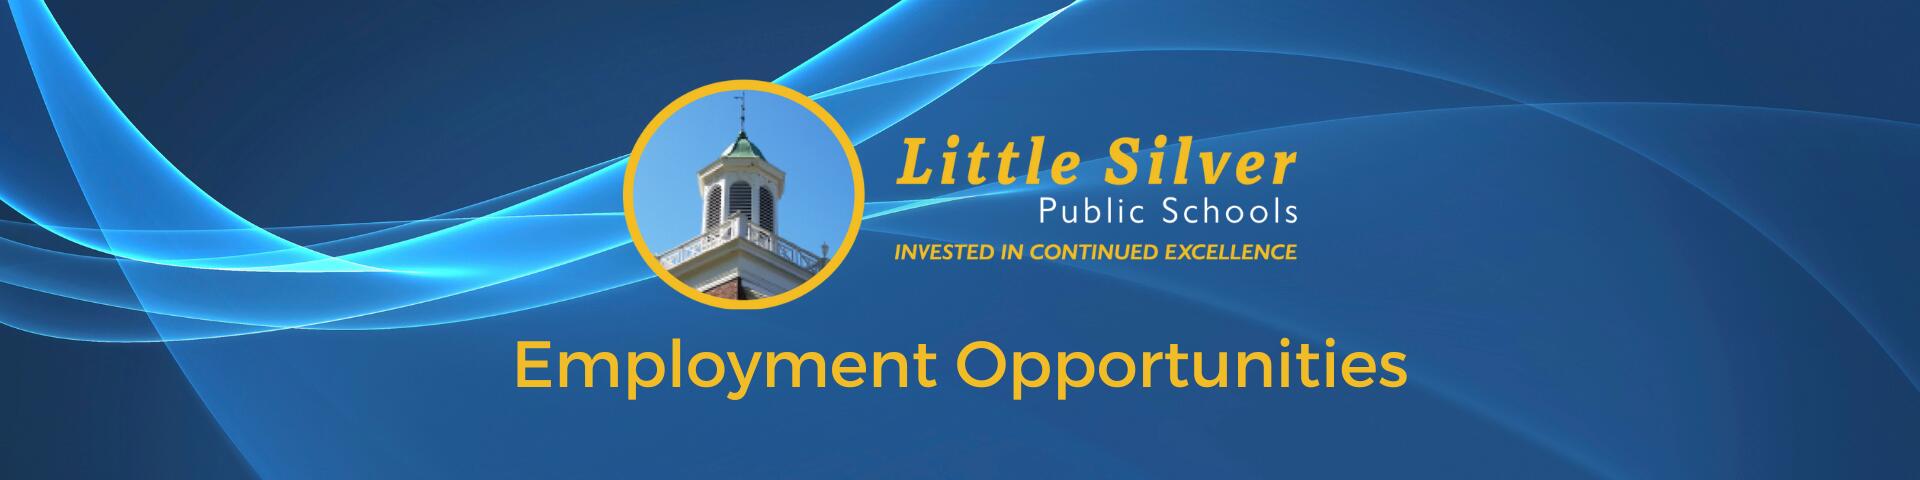 Employment Opportunities banner